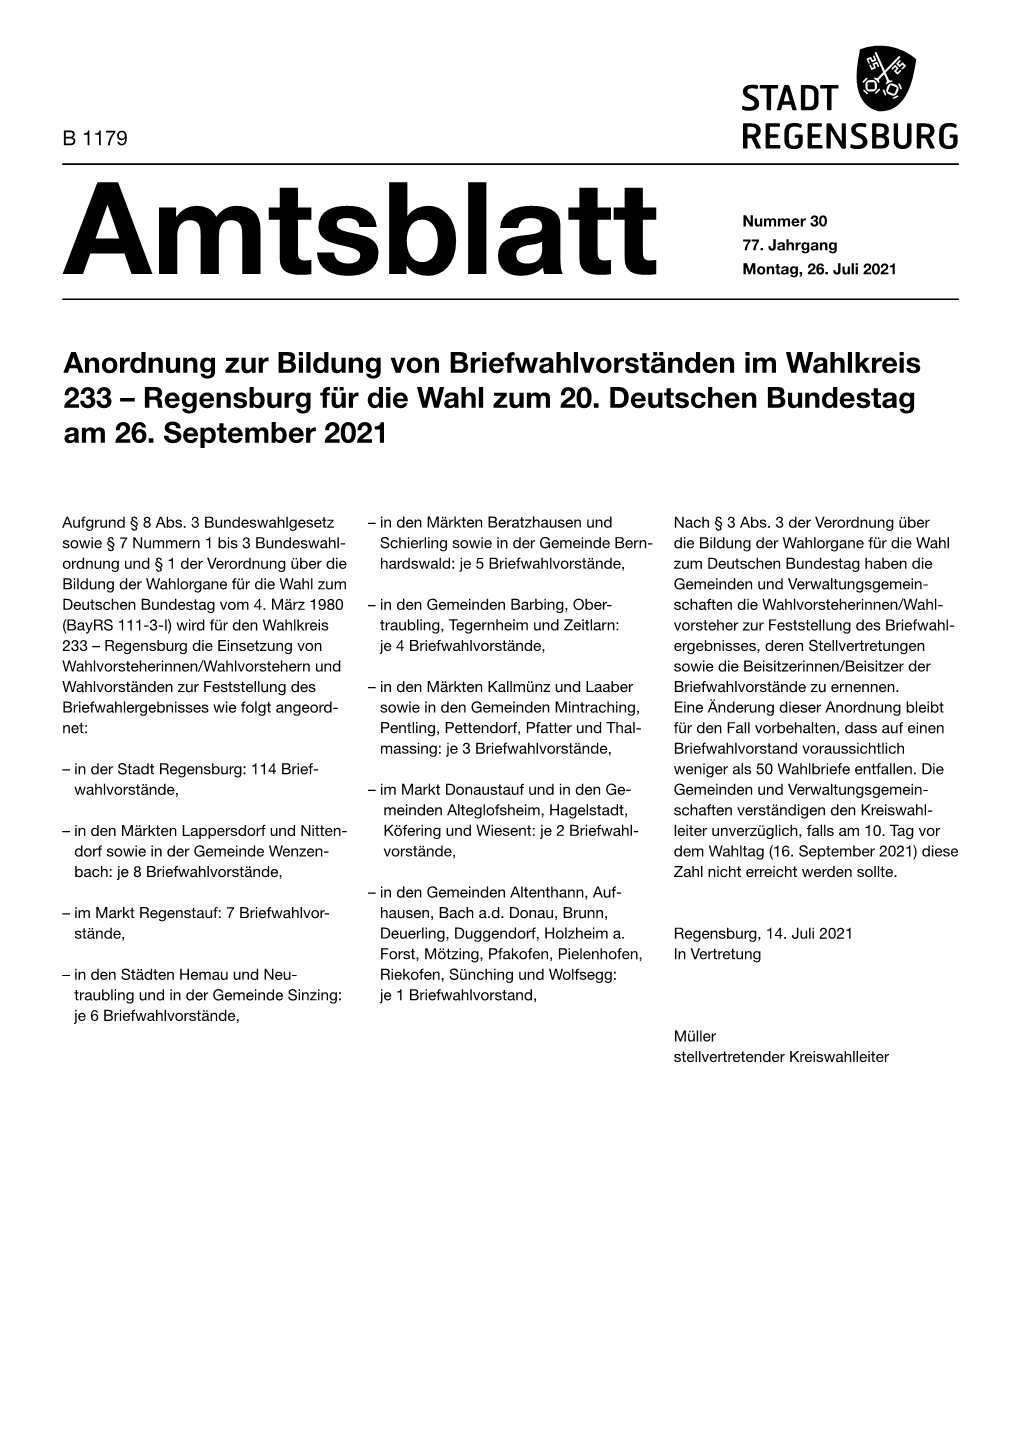 Amtsblatt 30 / 26.07.2021